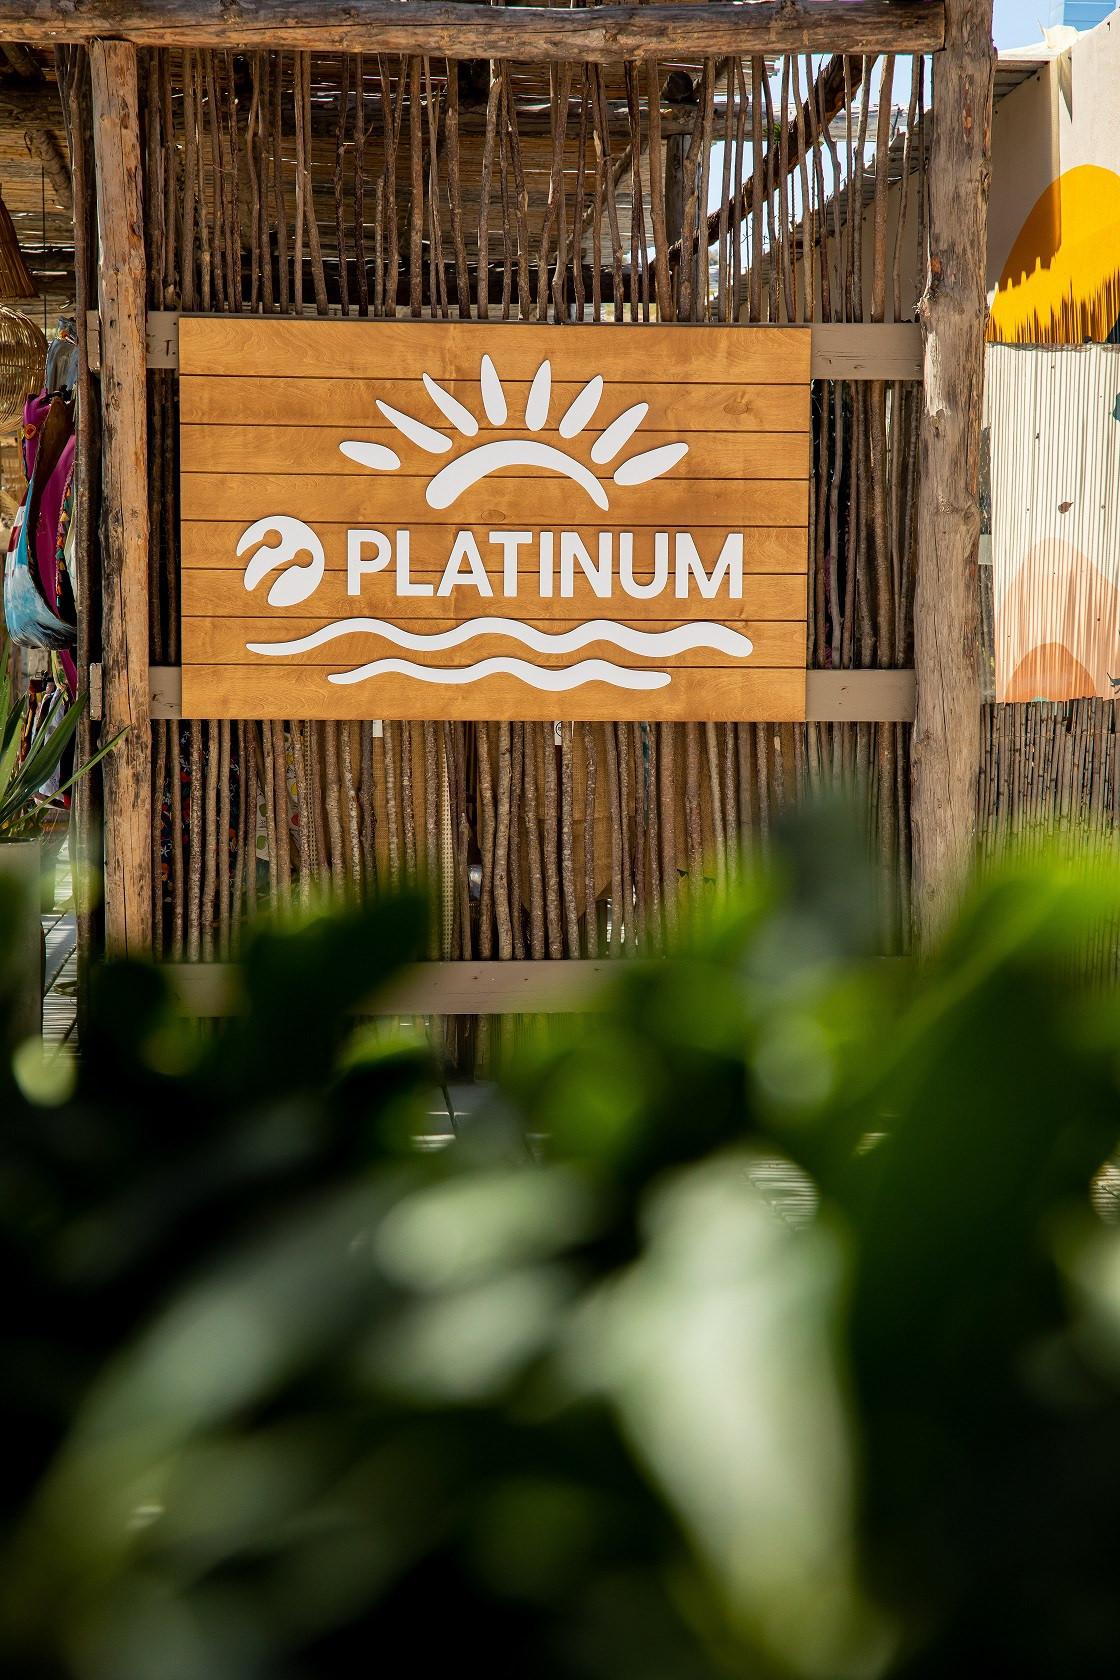 Turkcell Platinum’un yaz kampanyalarıyla beach’ler de ayrıcalıklı!